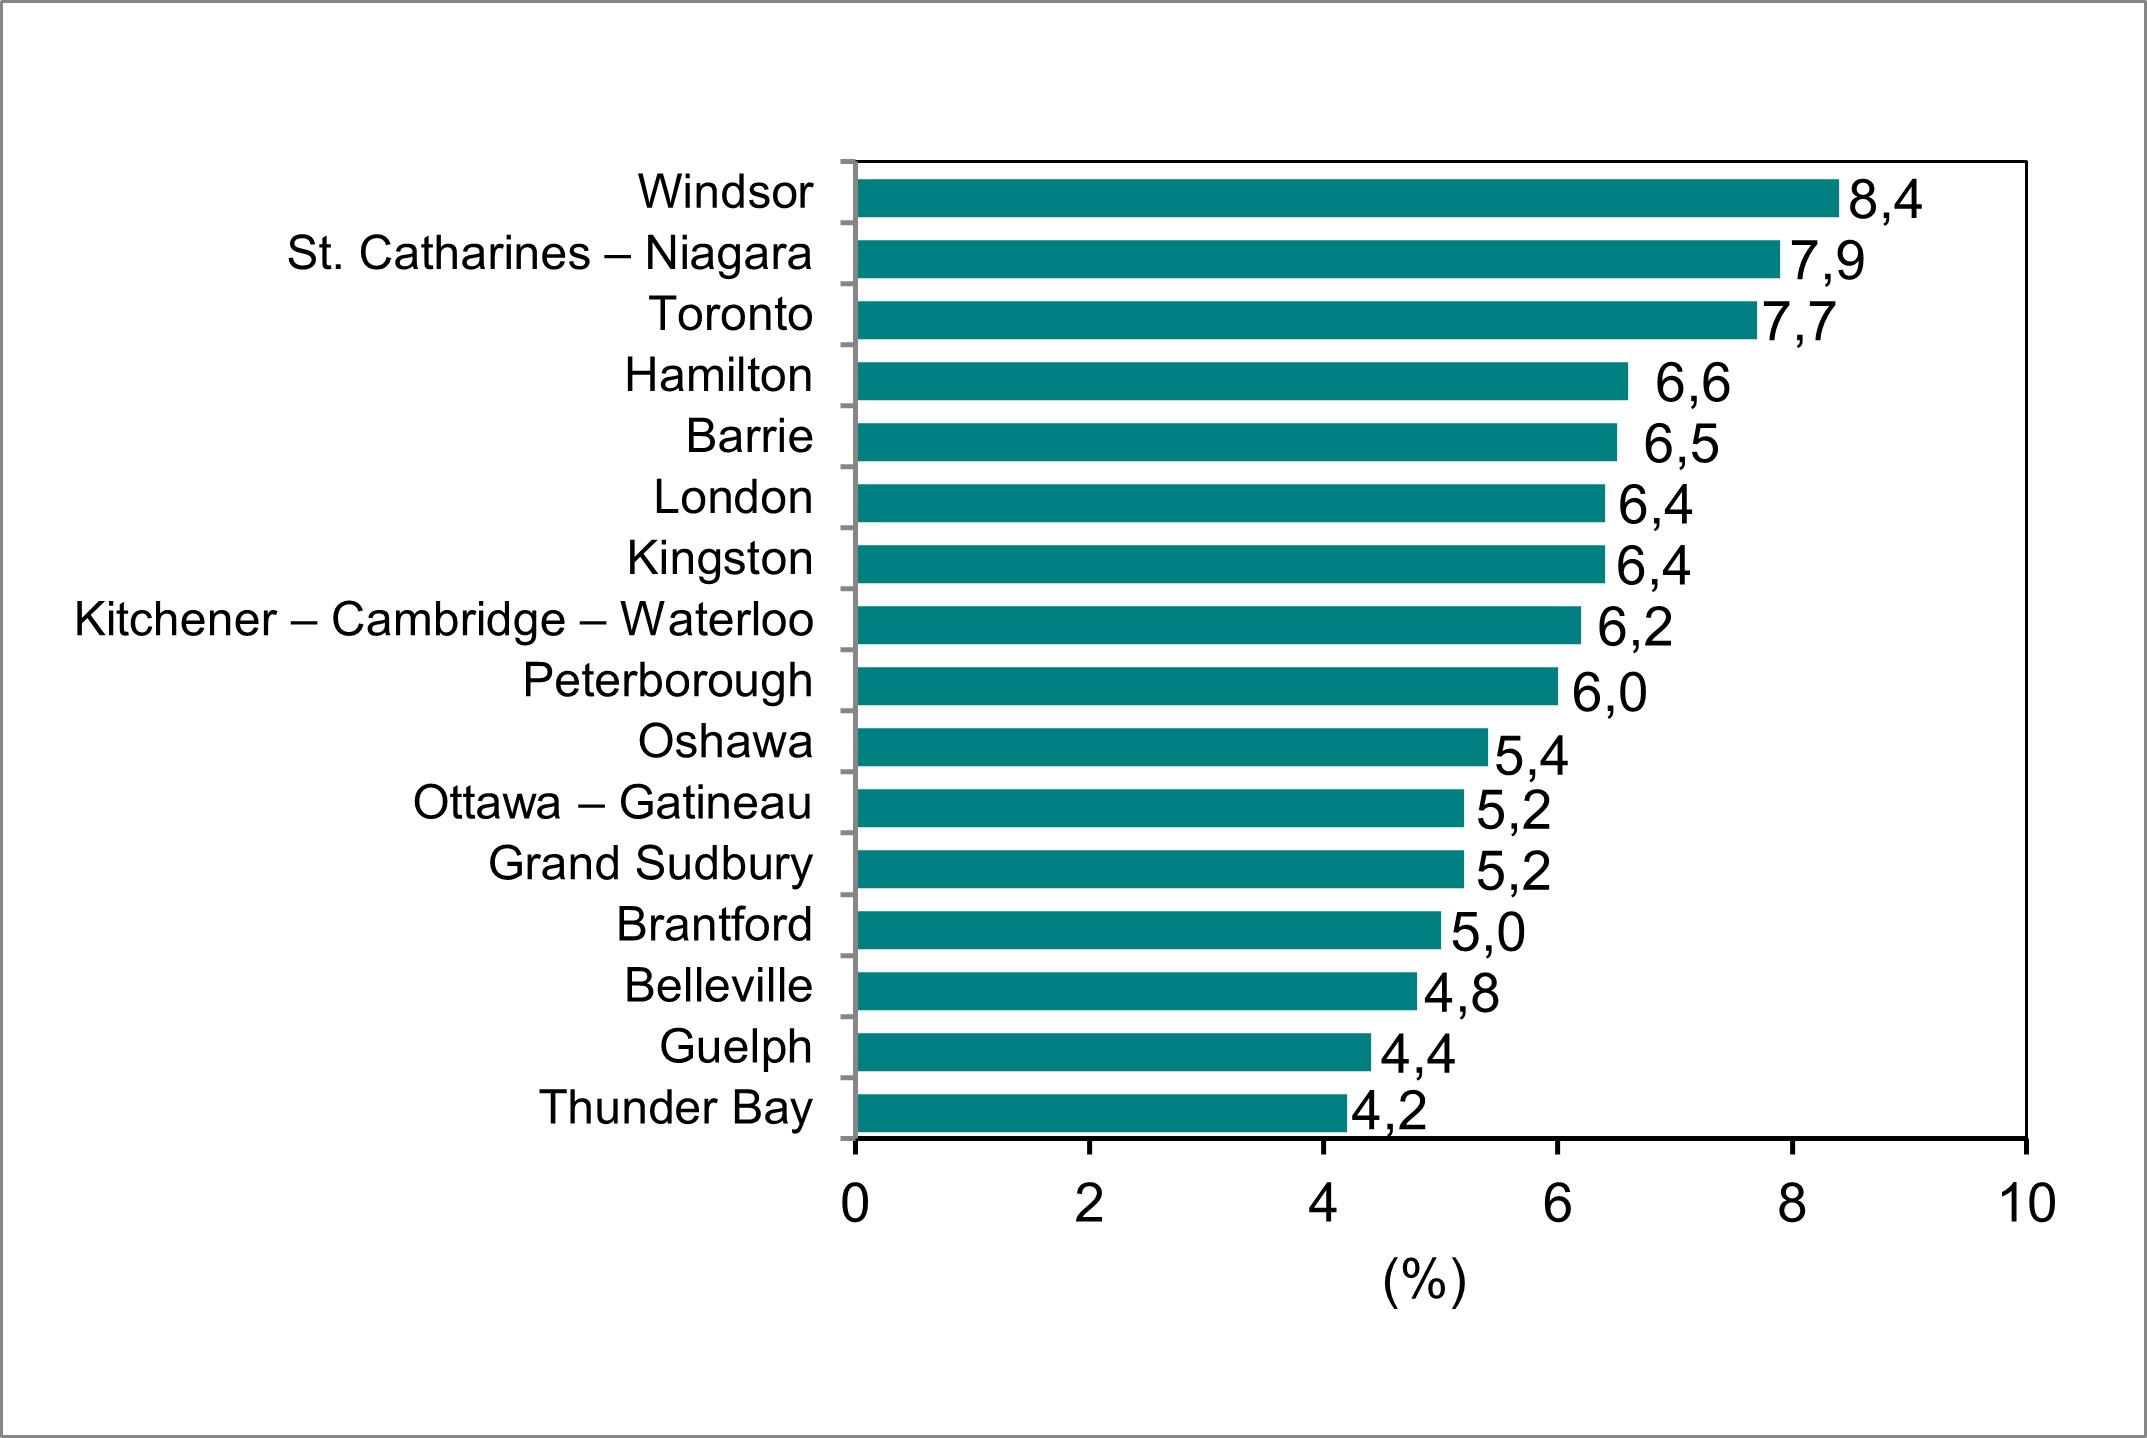 Le diagramme à barres du graphique 6 illustre le taux de chômage par région métropolitaine de recensement de l’Ontario.